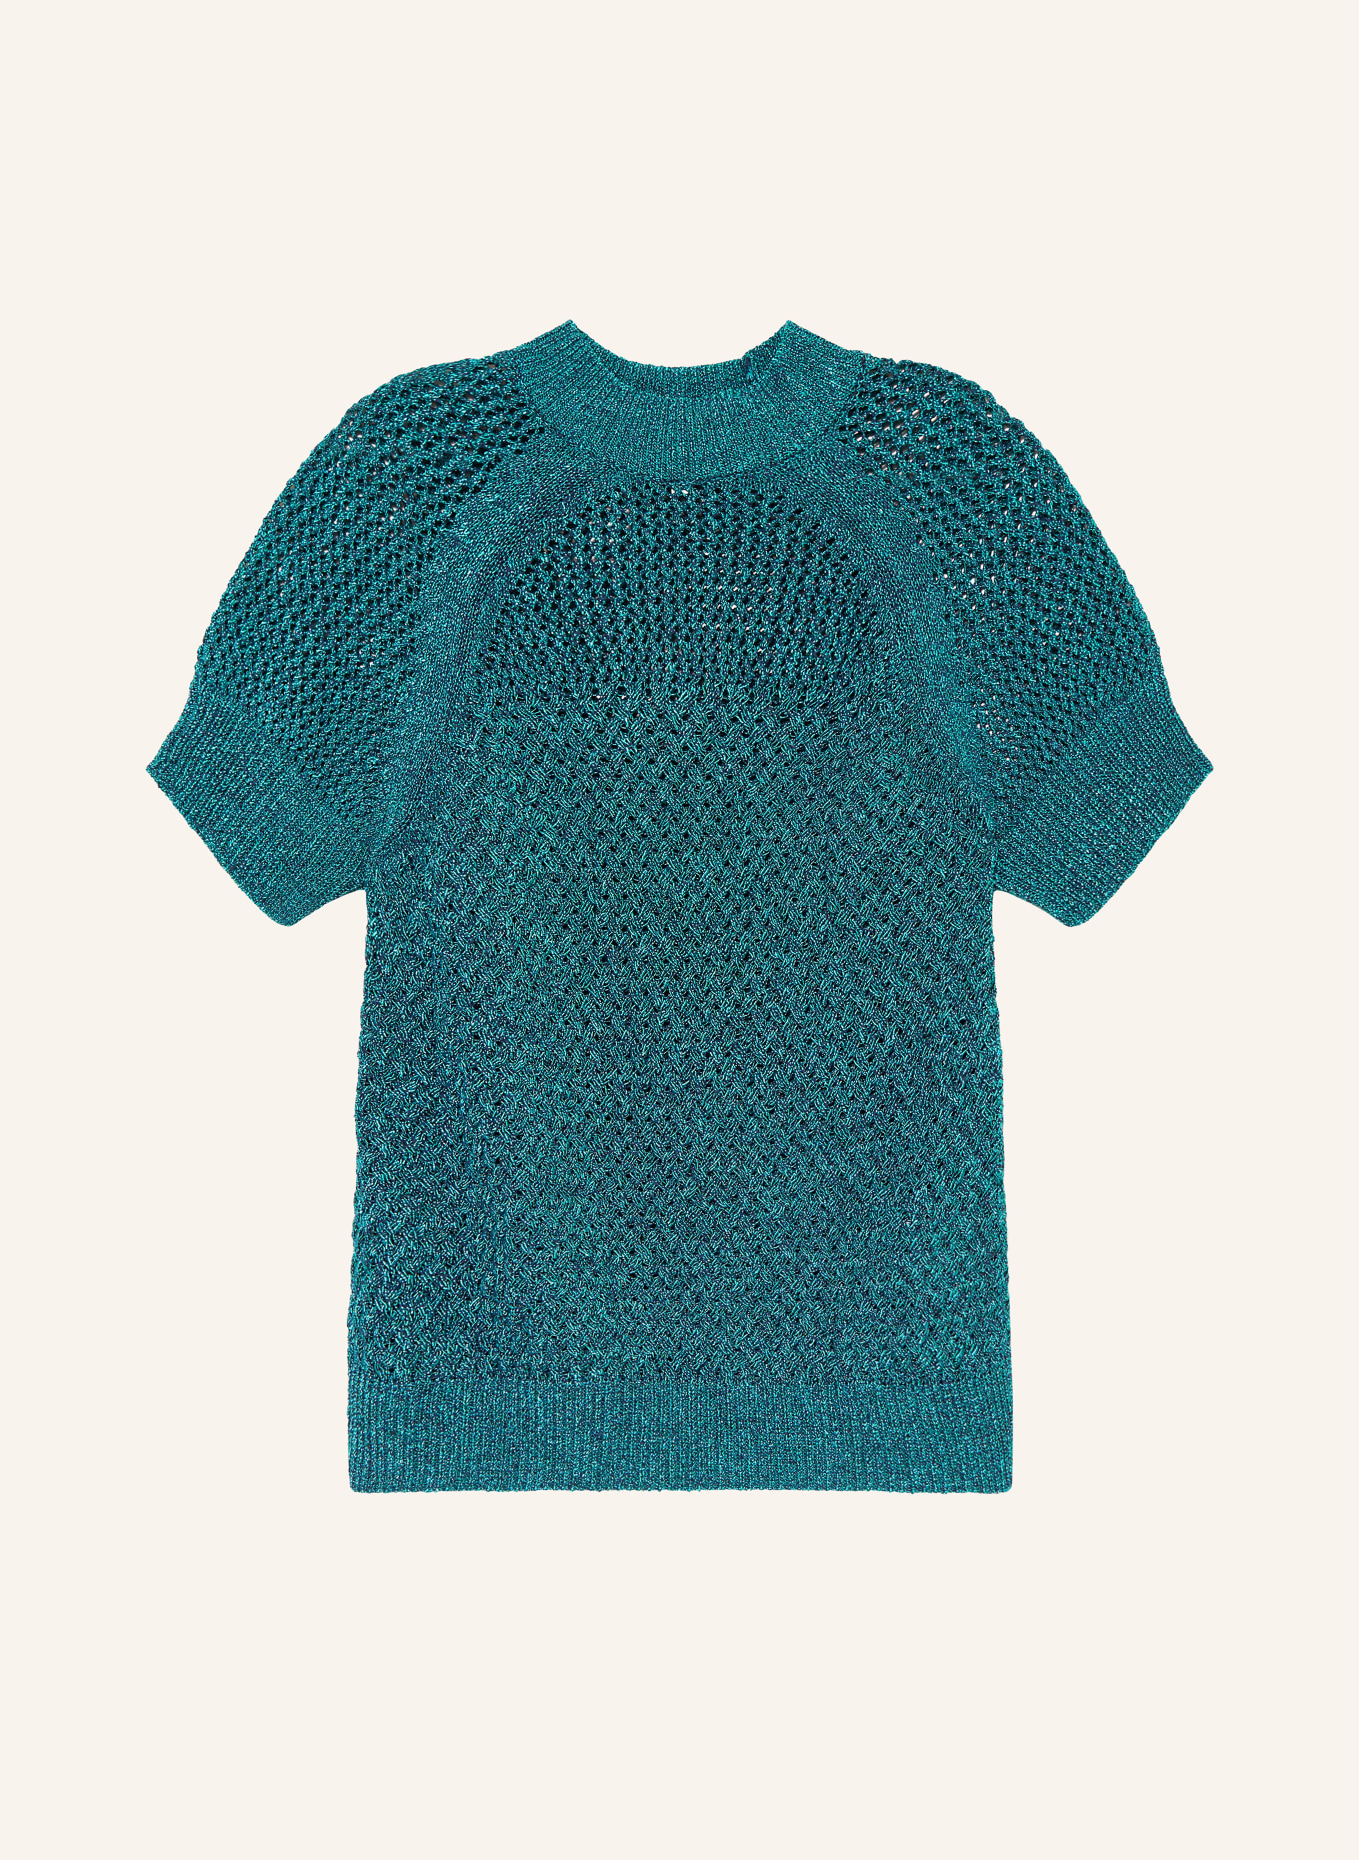 TED BAKER Knit shirt MATILDR, Color: TEAL (Image 1)